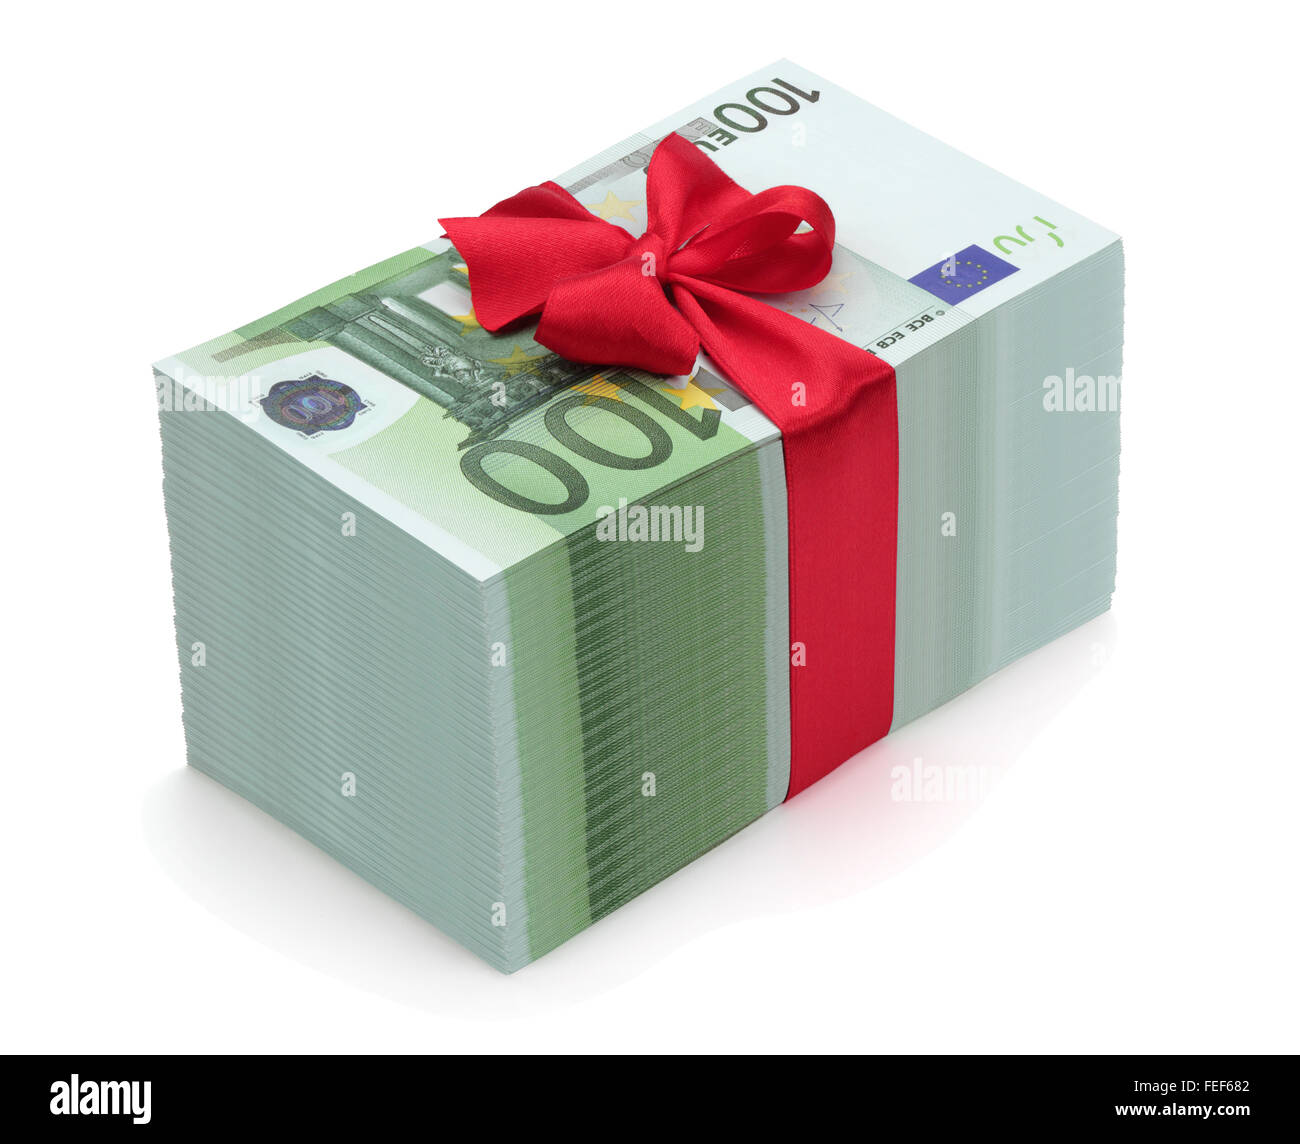 Haufen von hundert Euro-Banknoten mit rotem Band und Bogen, isoliert auf weißem Hintergrund, Clipping-Pfad enthalten. Stockfoto